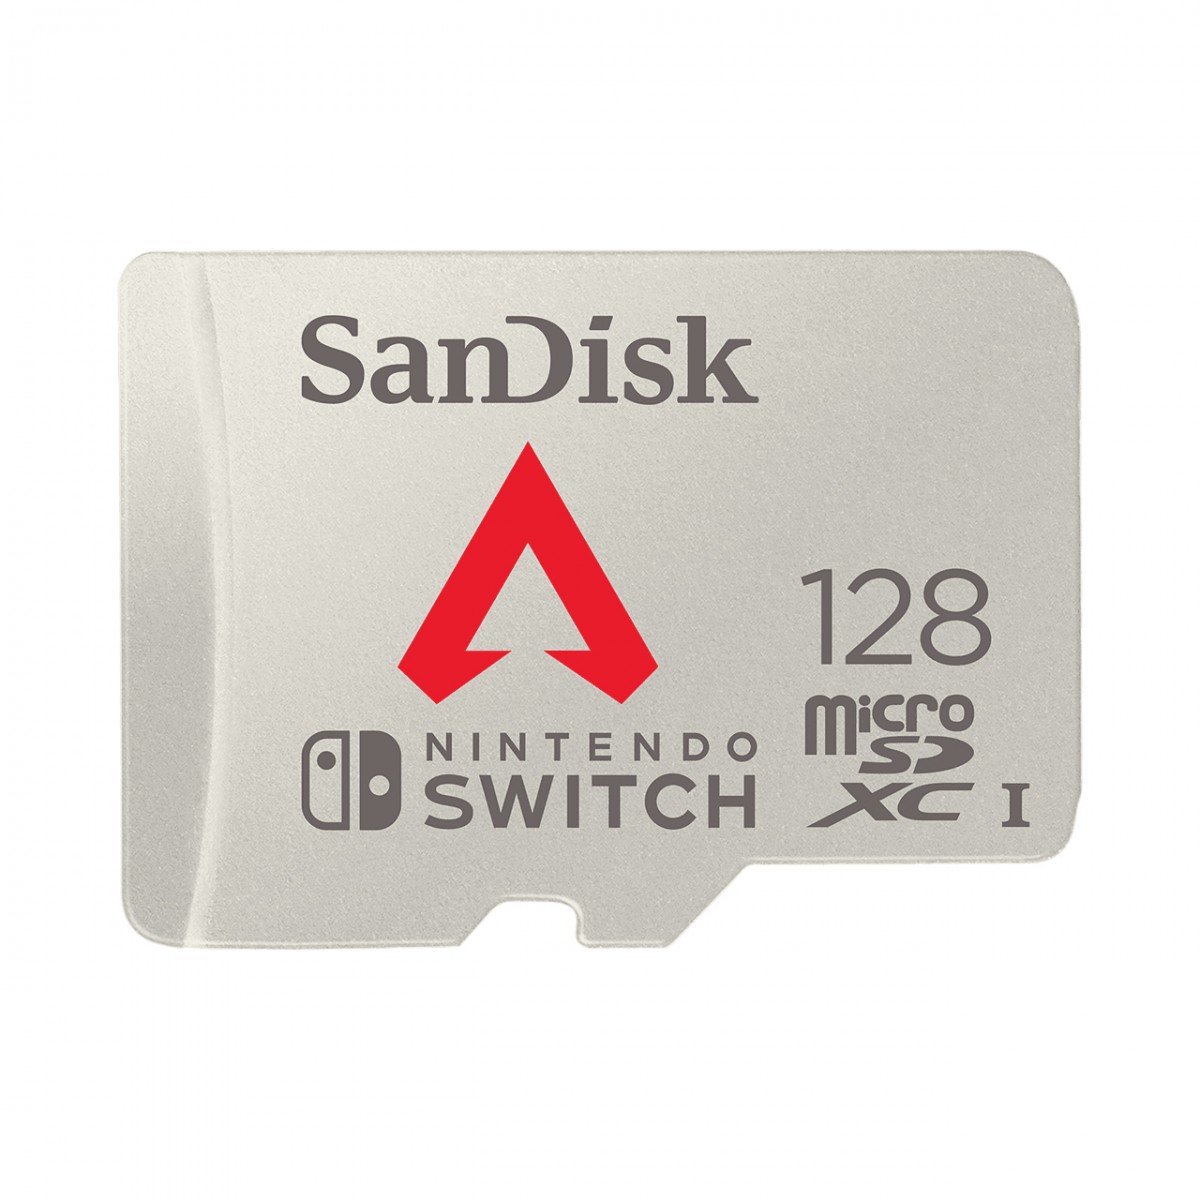 SanDisk annonce une carte microSDXC Apex Legends à destination de la Nintendo Switch